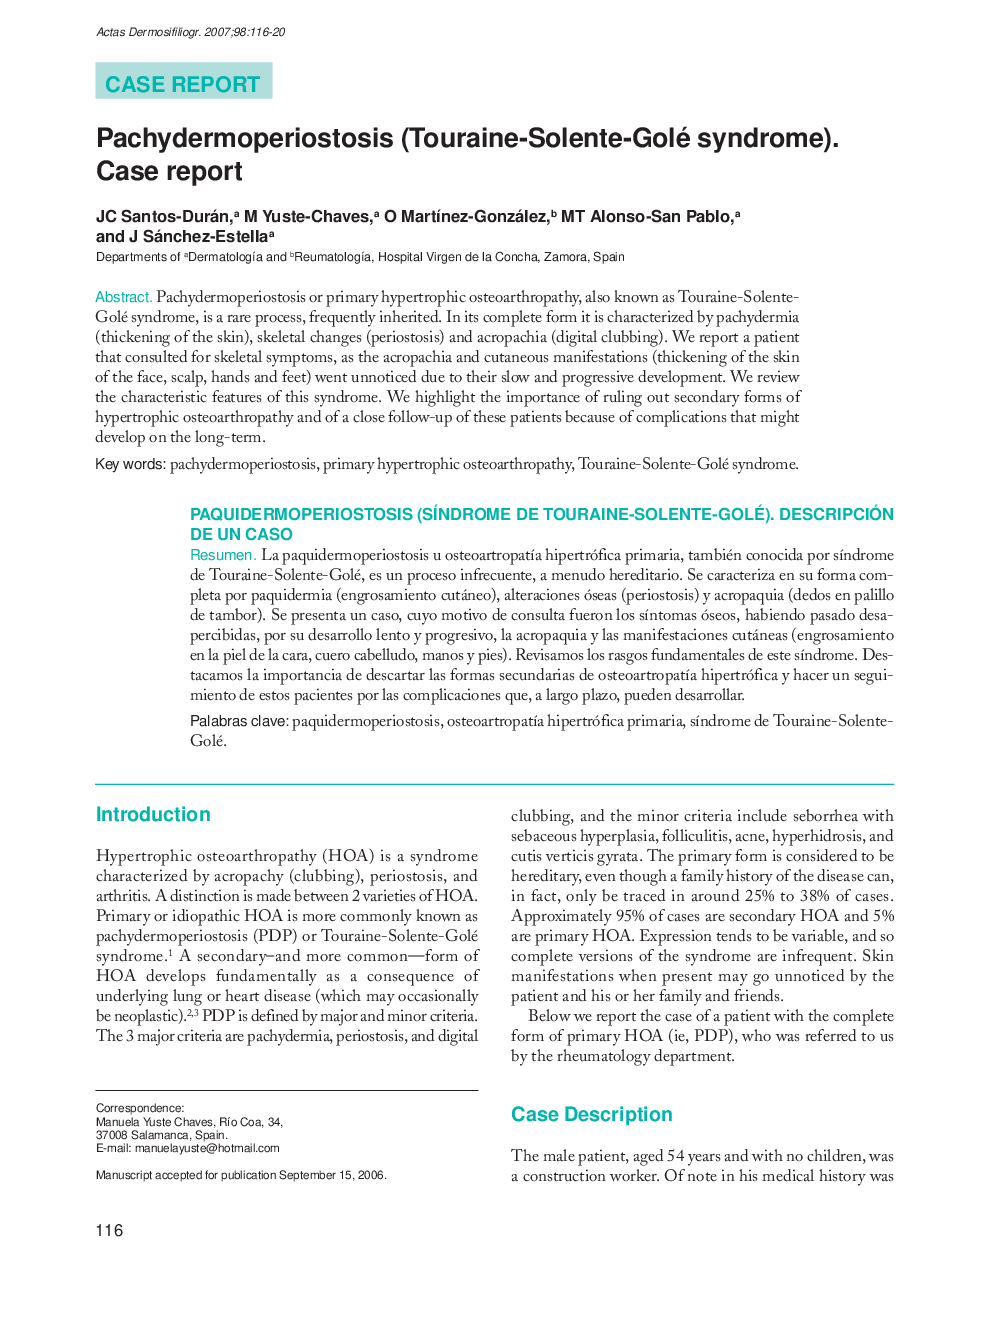 Pachydermoperiostosis (Touraine-Solente-Golé syndrome). Case report